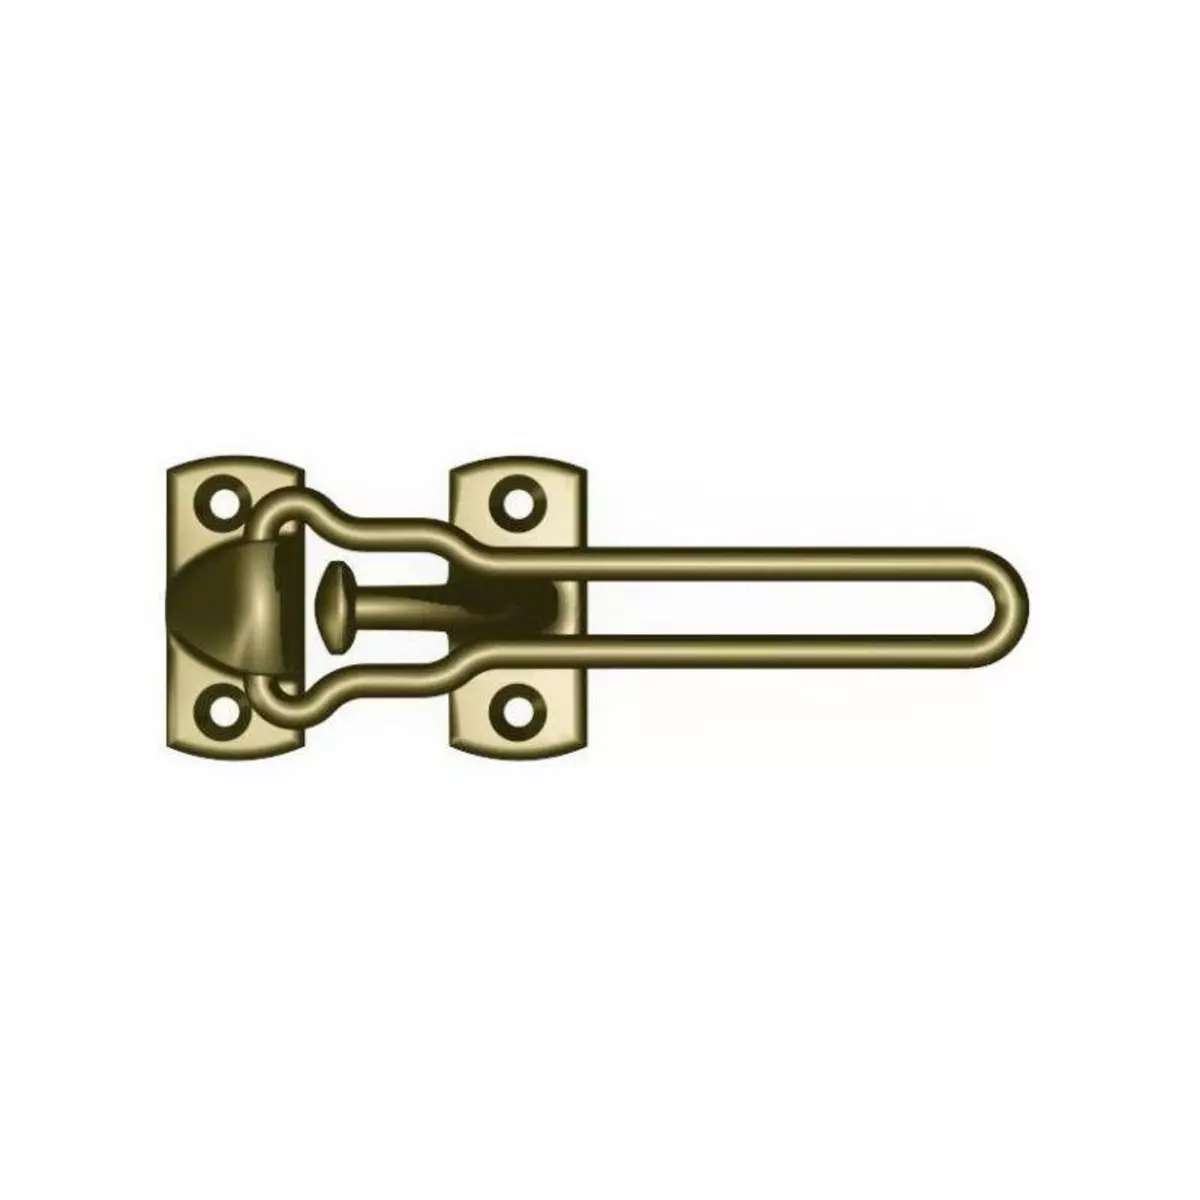 SOCONA Entrebaîlleur de sécurité CLASSIC pour porte 150m couleur bronze SOCONA O3